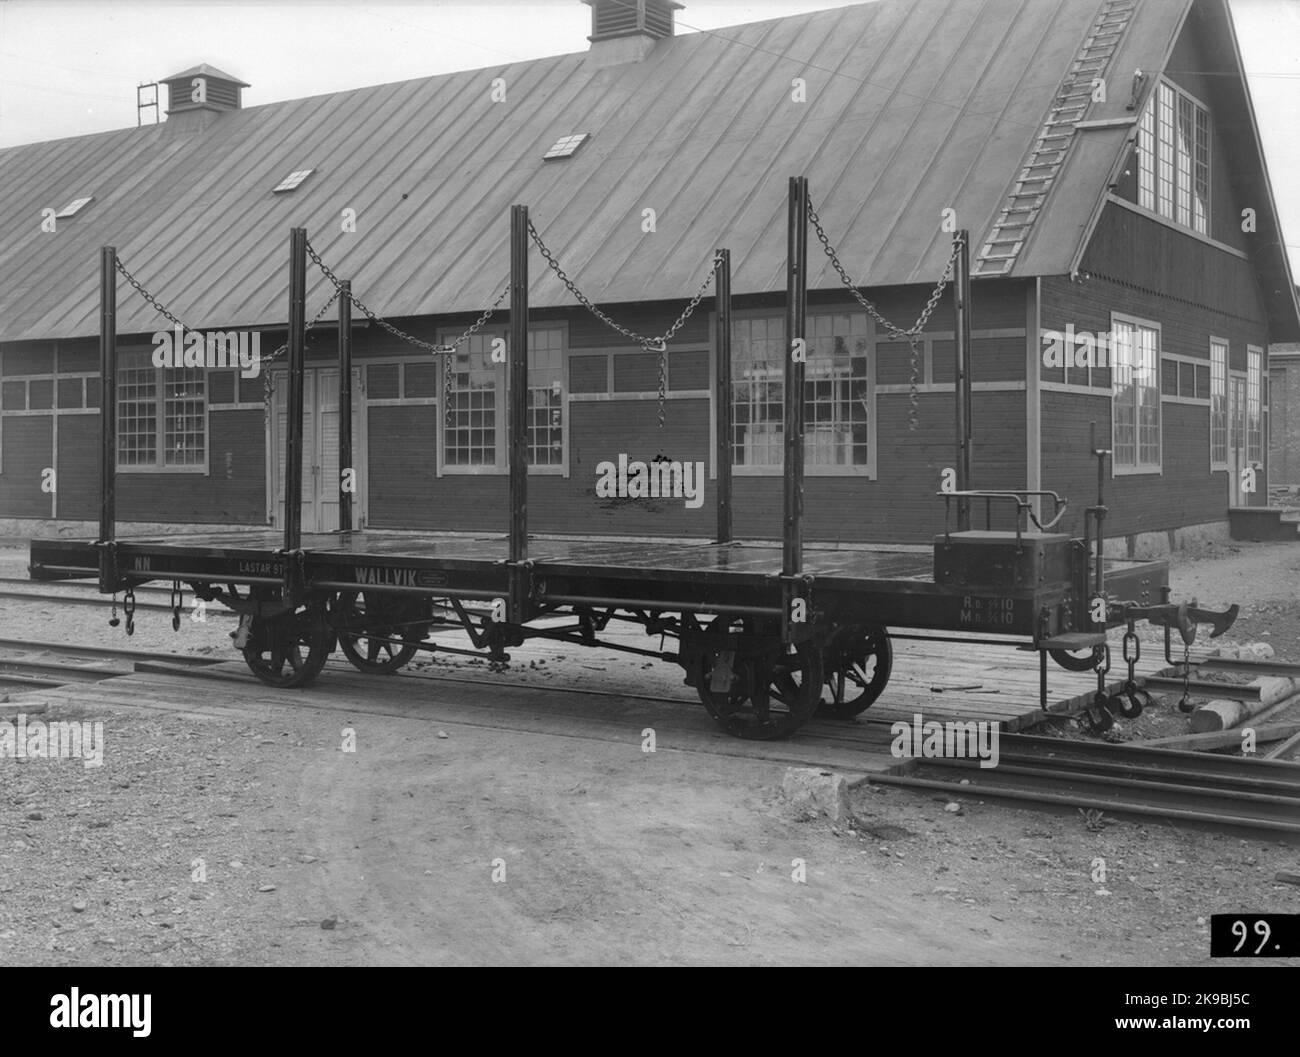 Sulfit AB Ljusnan, NN 9. Post Car. AB Svenska Railway Workshops, ASJ Stock Photo